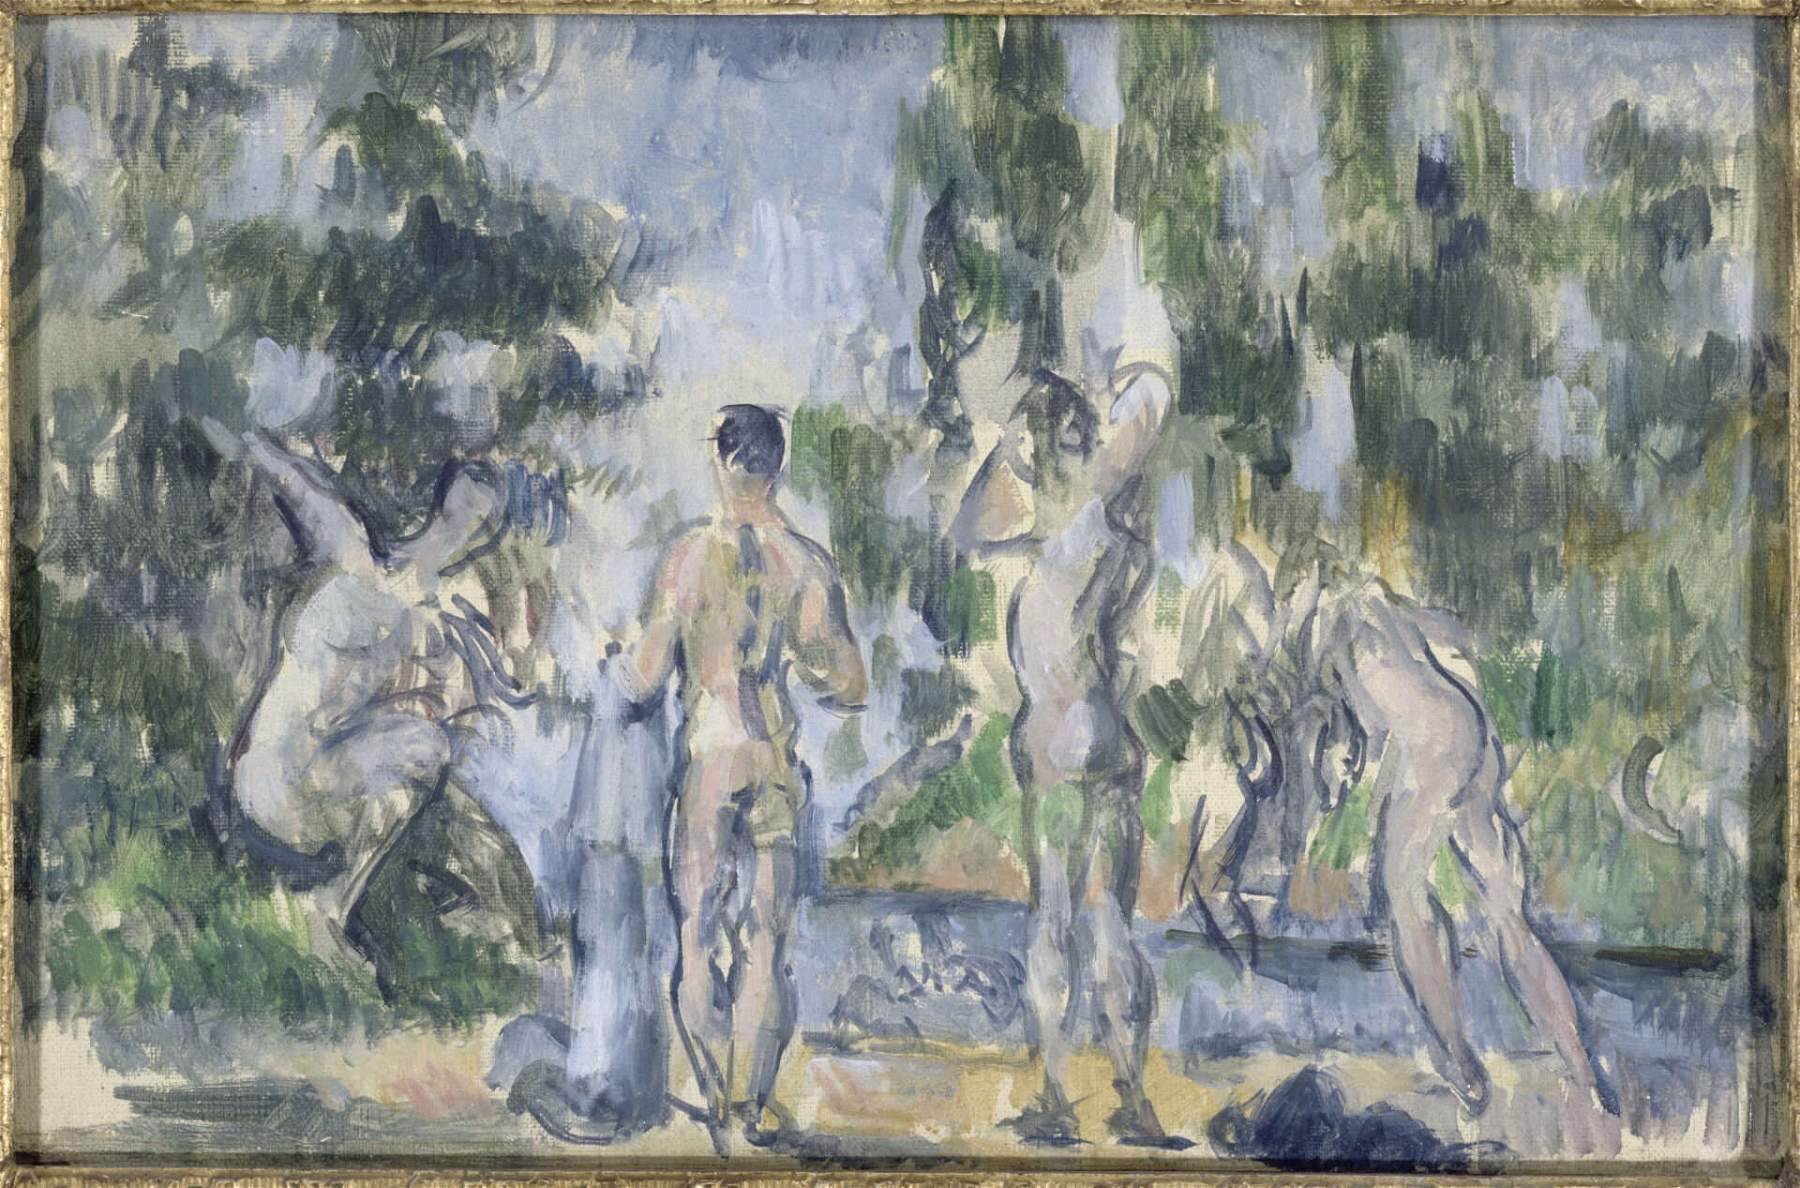 Milán, una gran exposición en el Palazzo Reale compara a Cézanne y Renoir